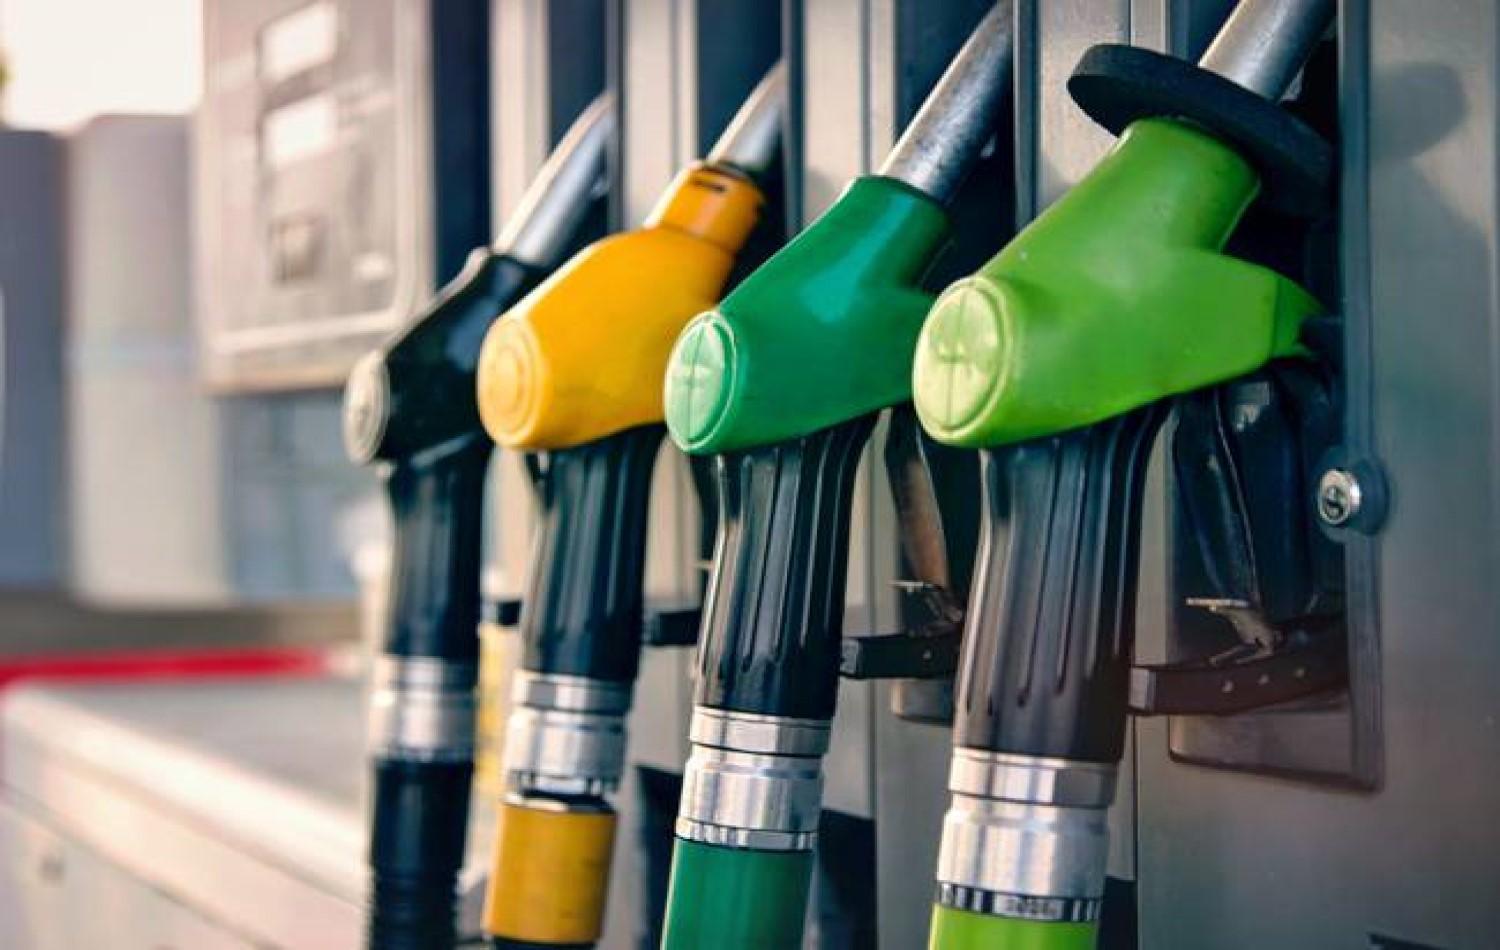 Novos preços da gasolina e do diesel passam a valer a partir desta sexta-feira (11)